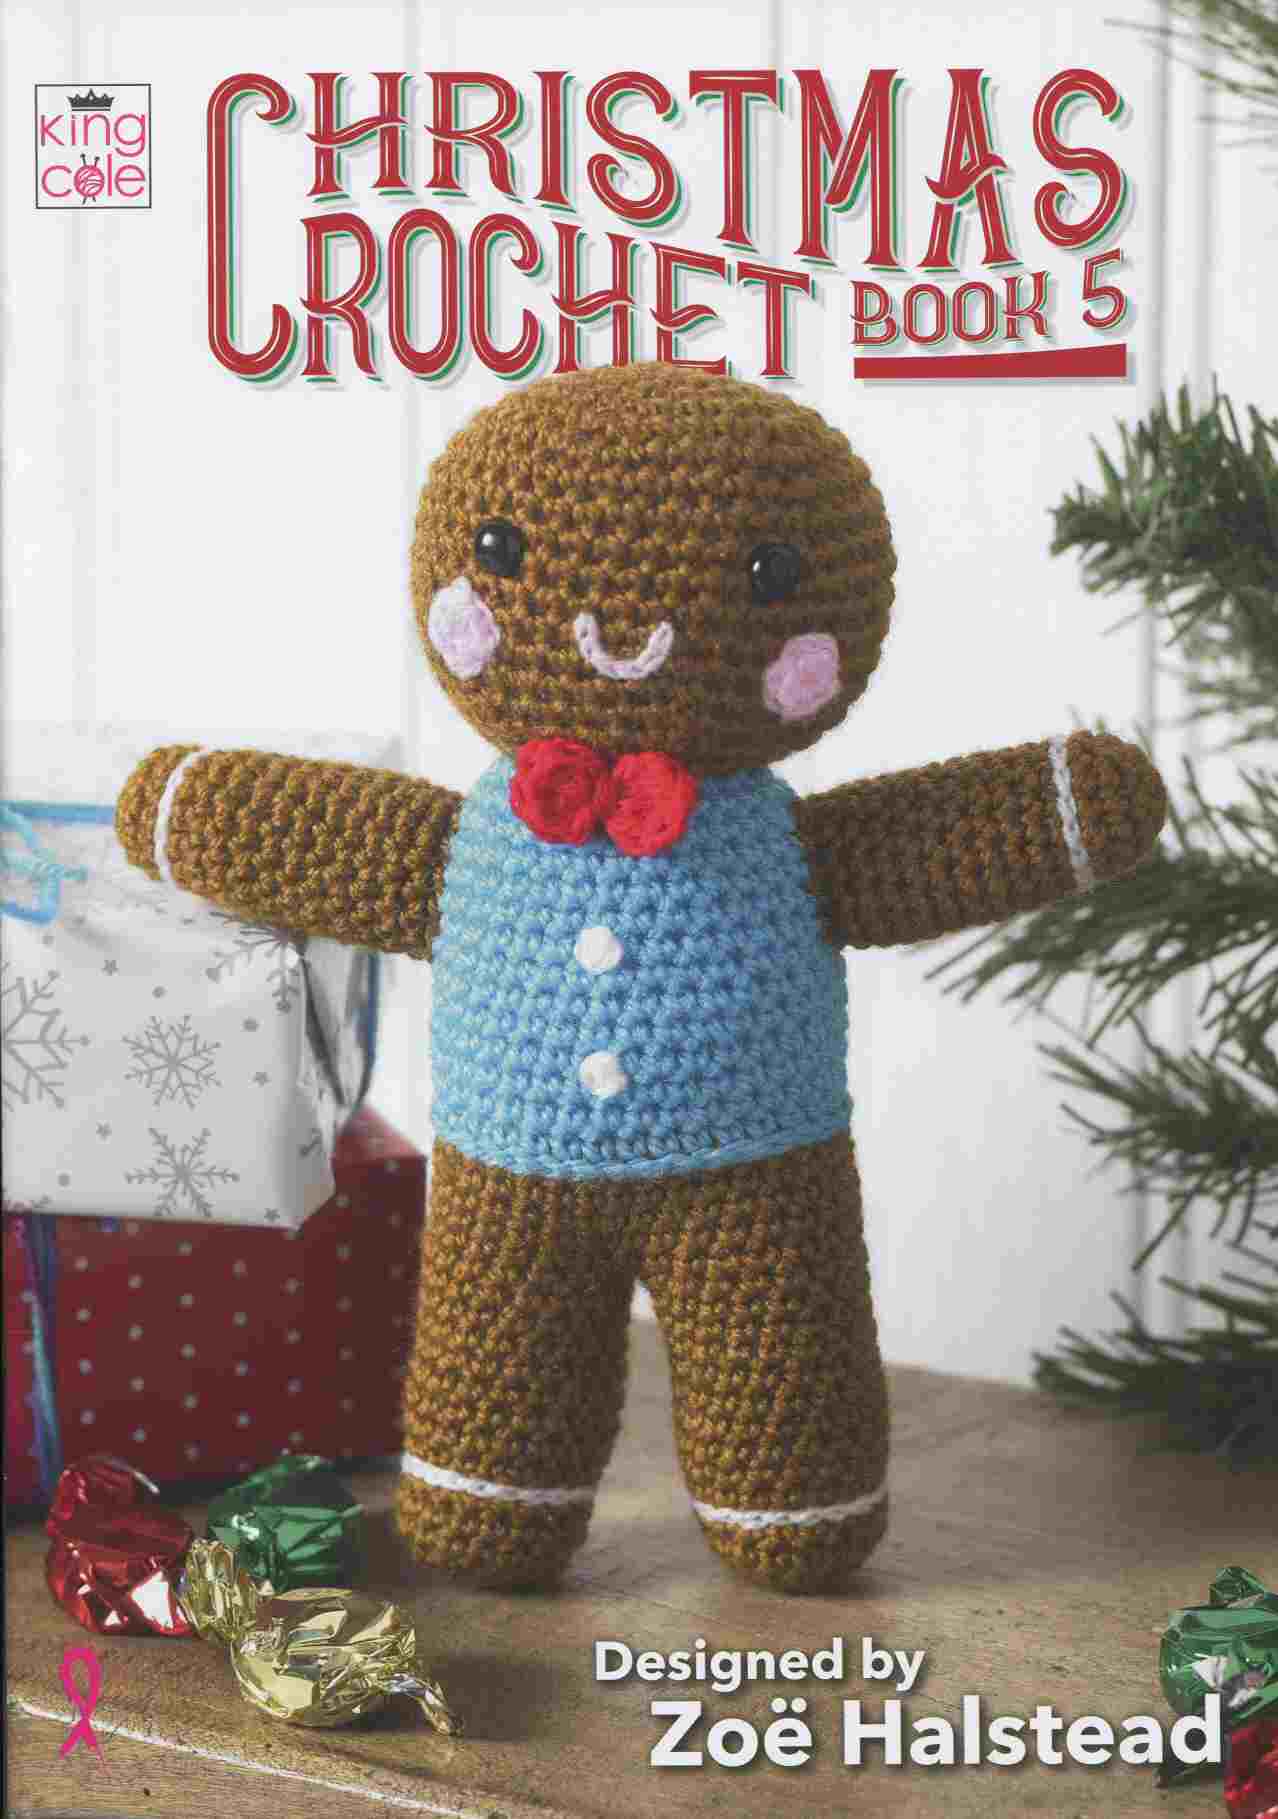 KCCROC5 Christmas Crochet Book 5